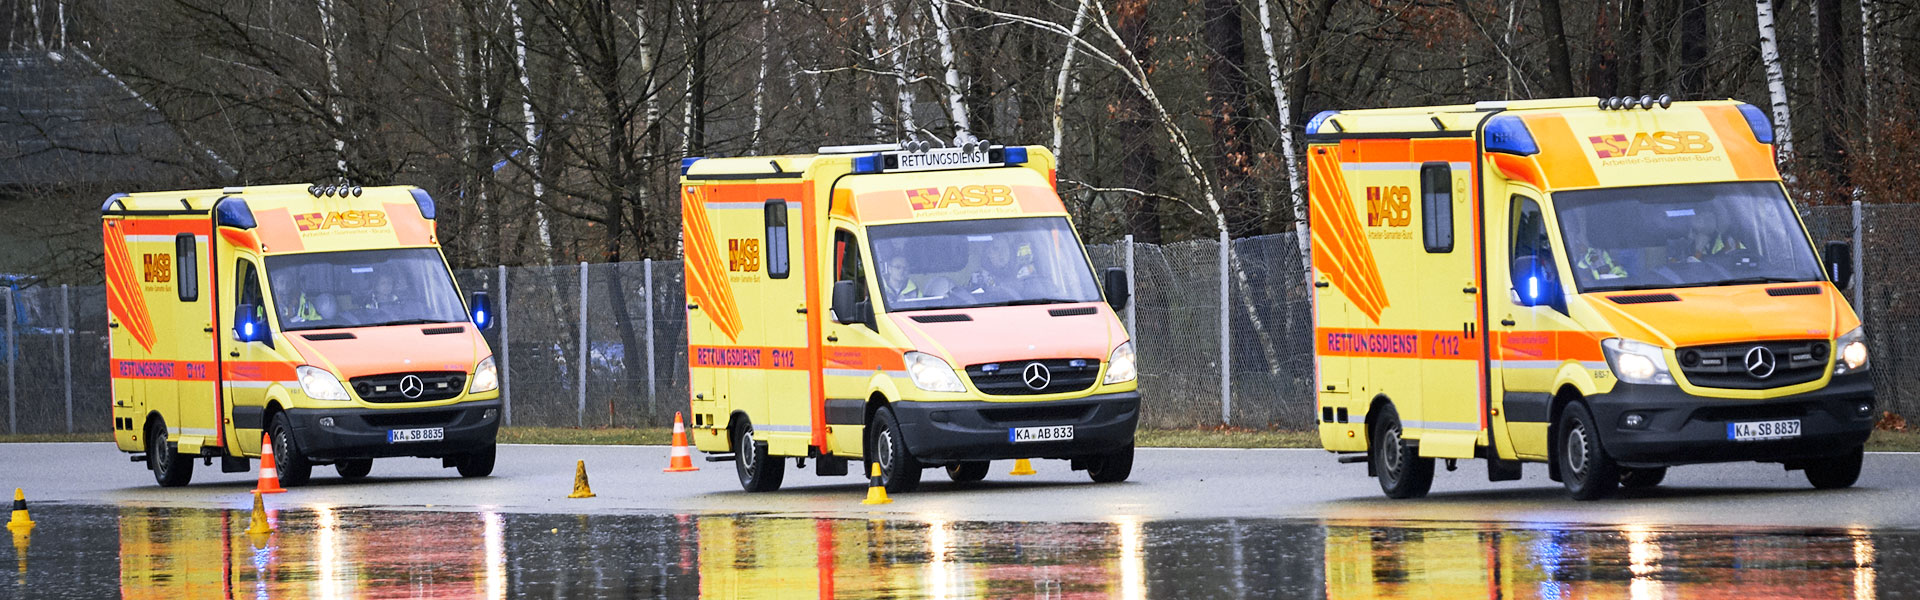 Rettungsdienst Baden-Württemberg